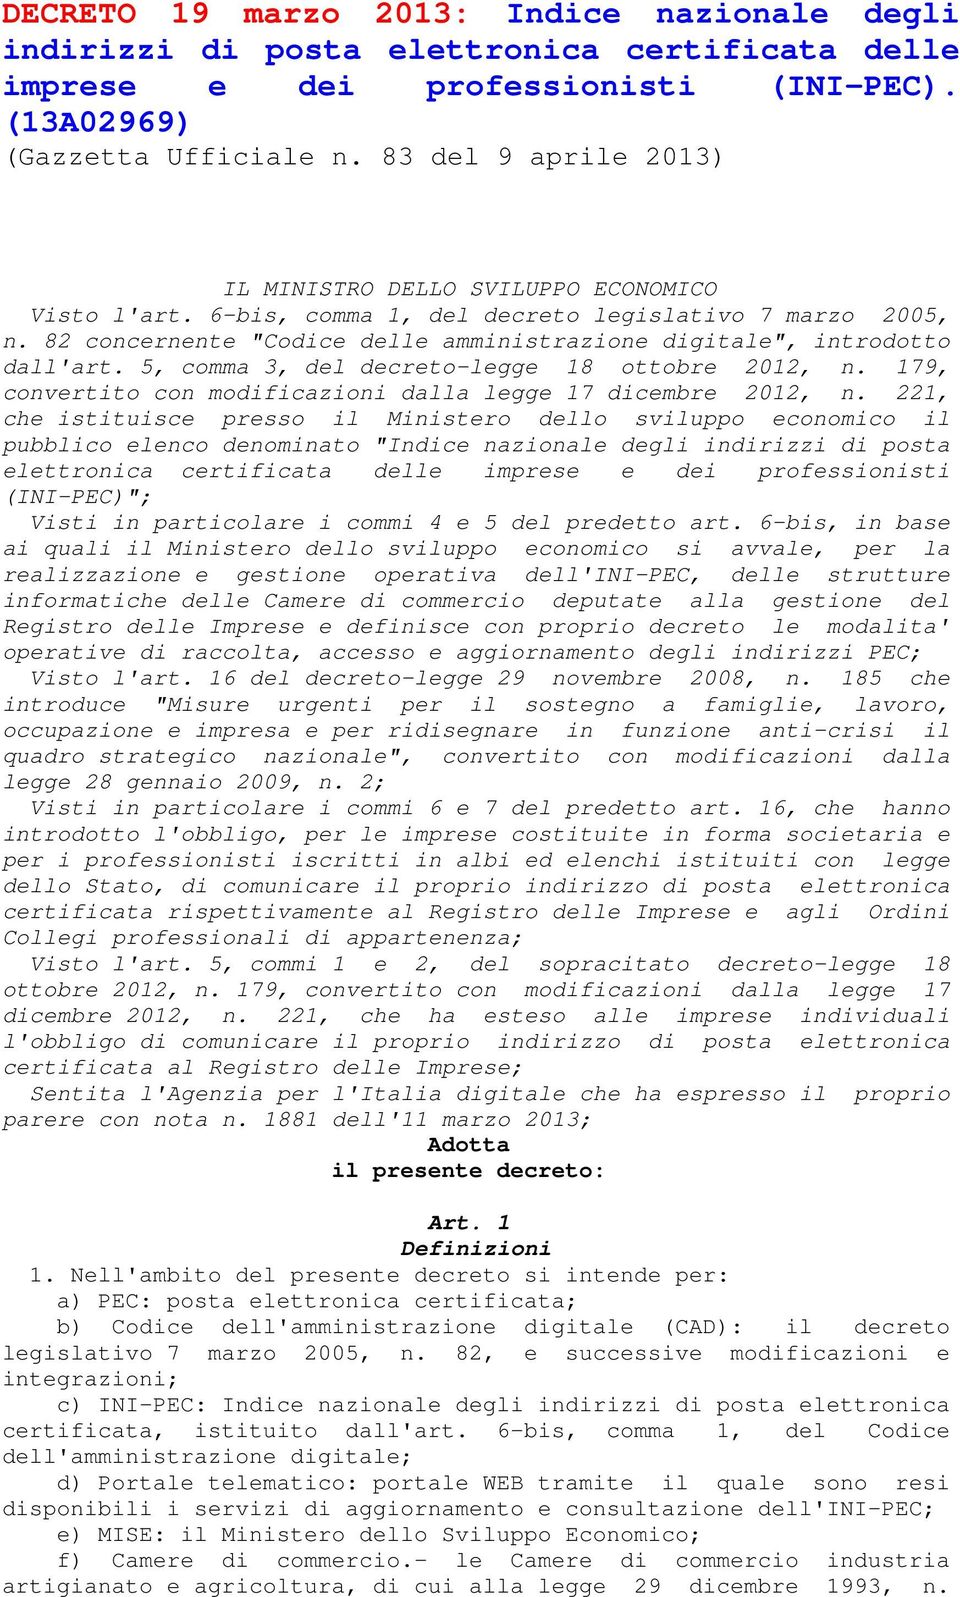 82 concernente "Codice delle amministrazione digitale", introdotto dall'art. 5, comma 3, del decreto-legge 18 ottobre 2012, n. 179, convertito con modificazioni dalla legge 17 dicembre 2012, n.